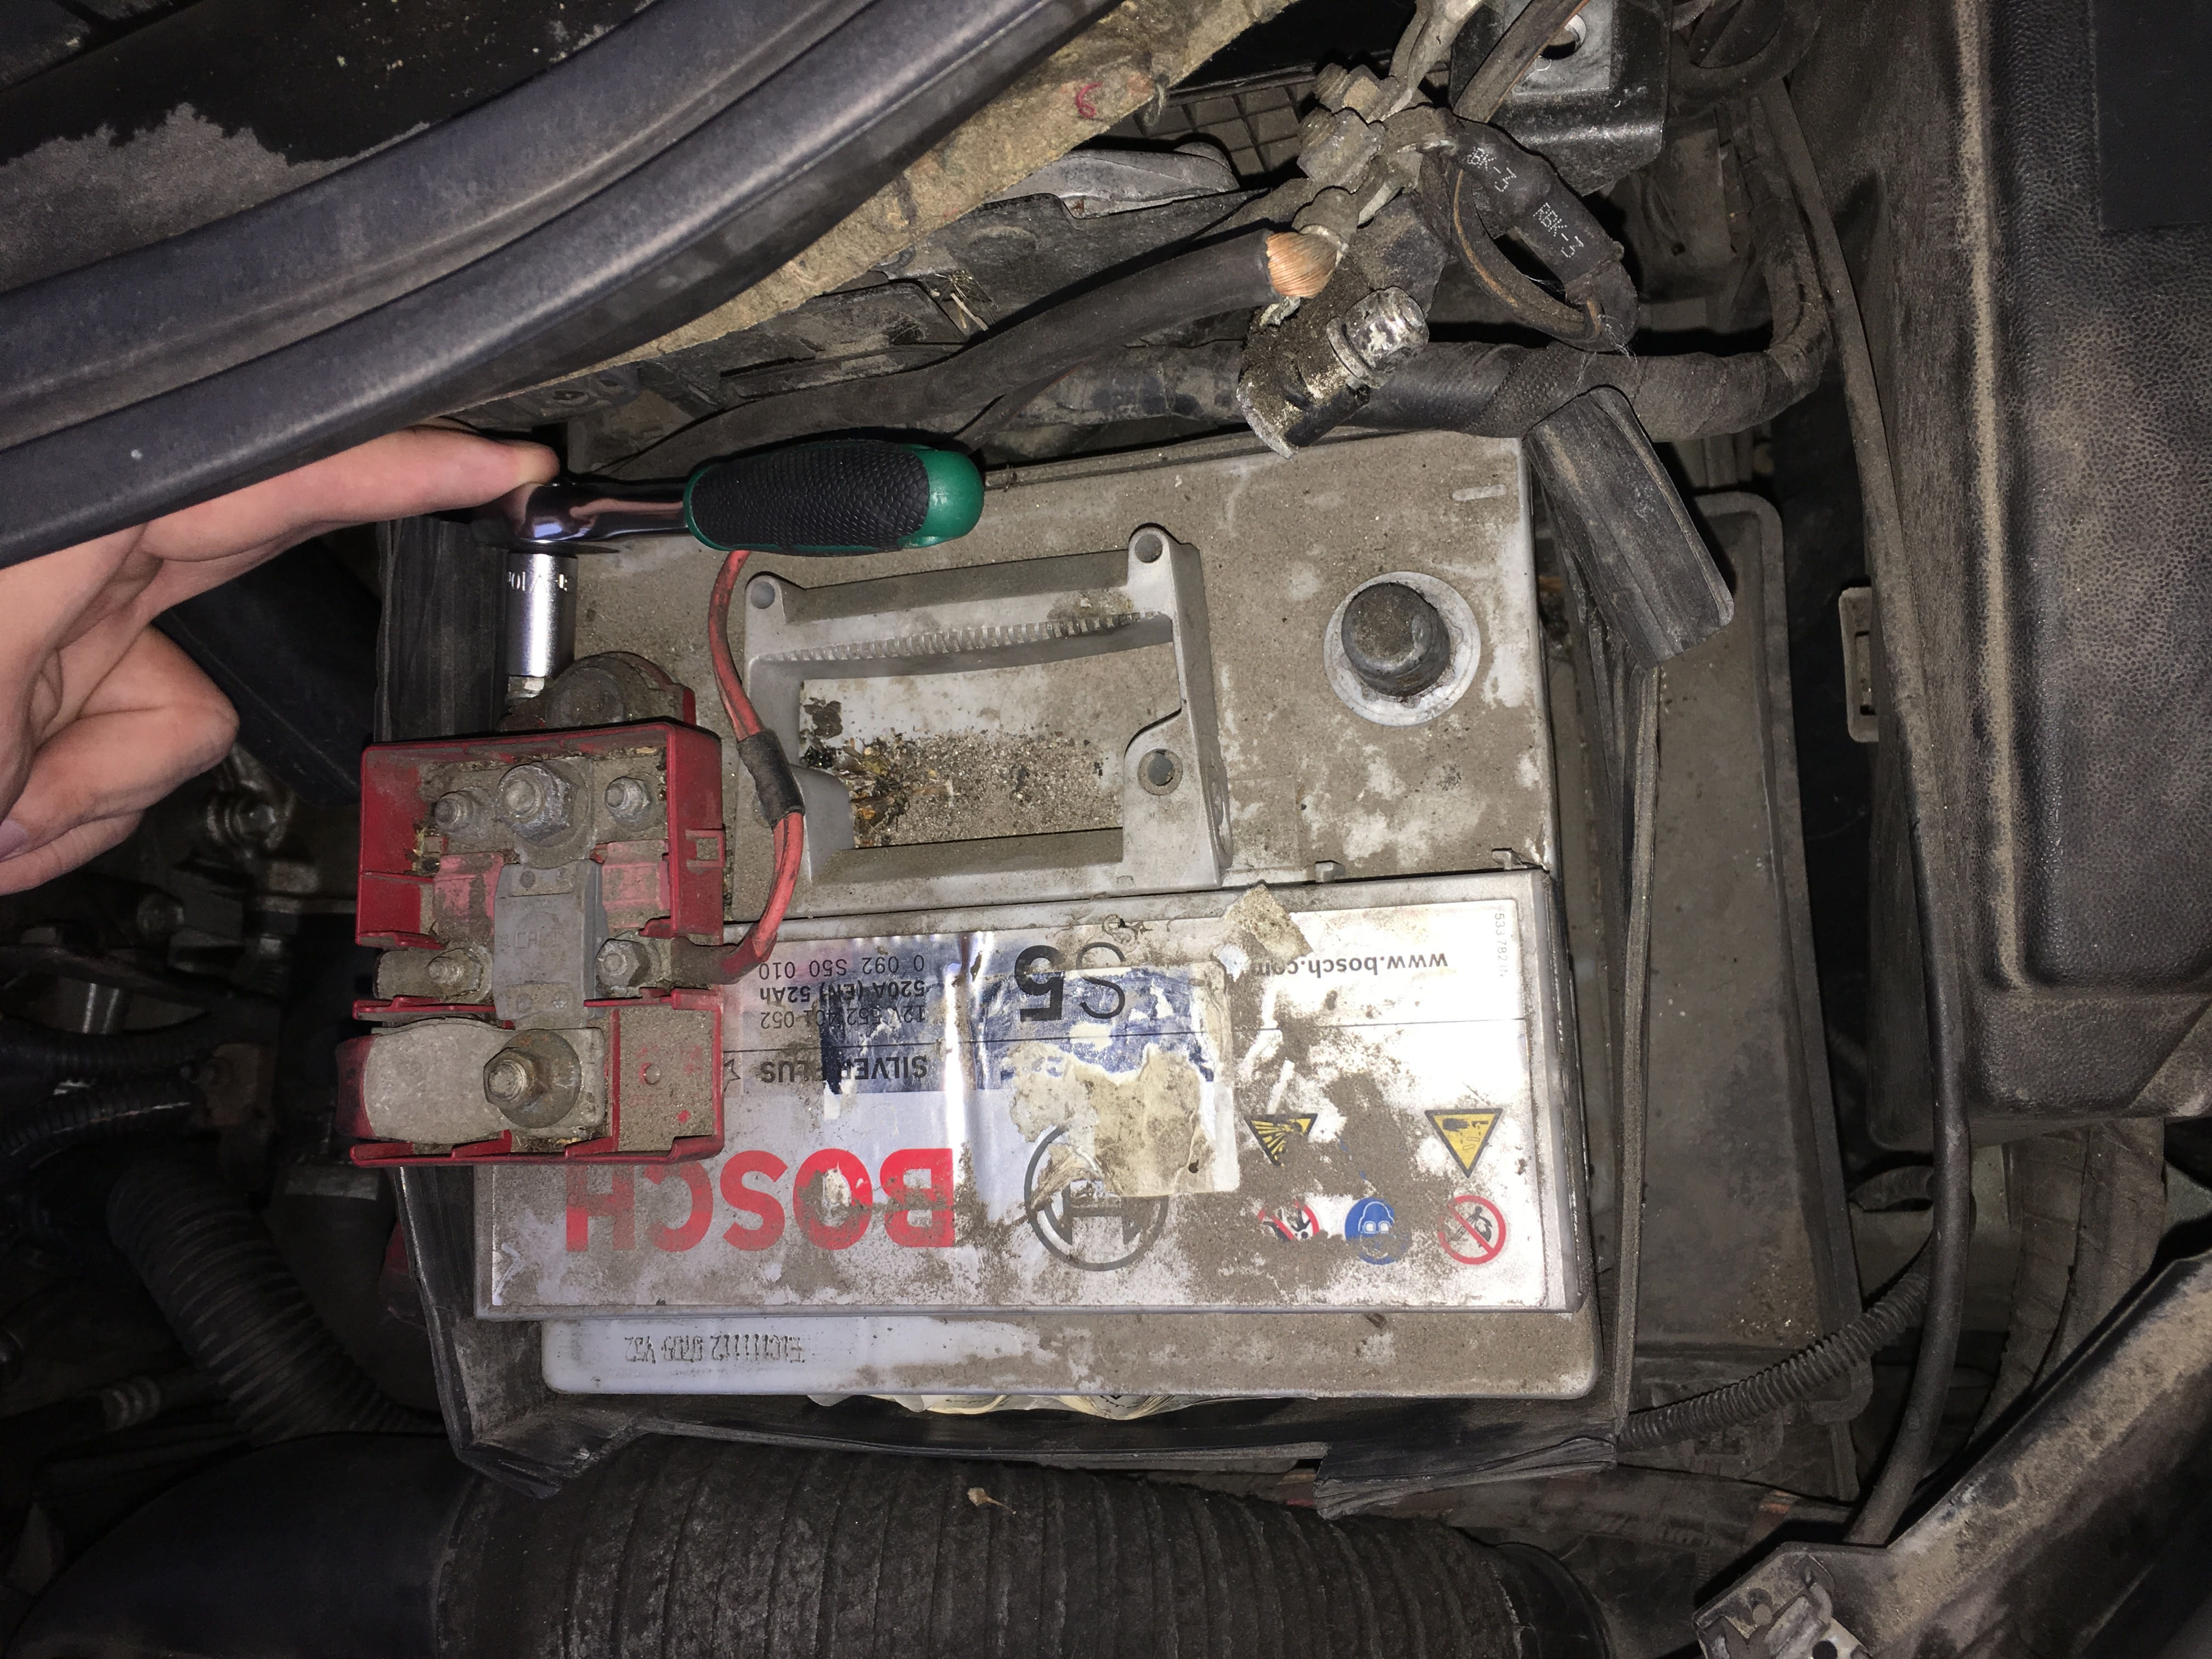 Batteriepolabdeckung Renault Scenic II - Warum verlegen